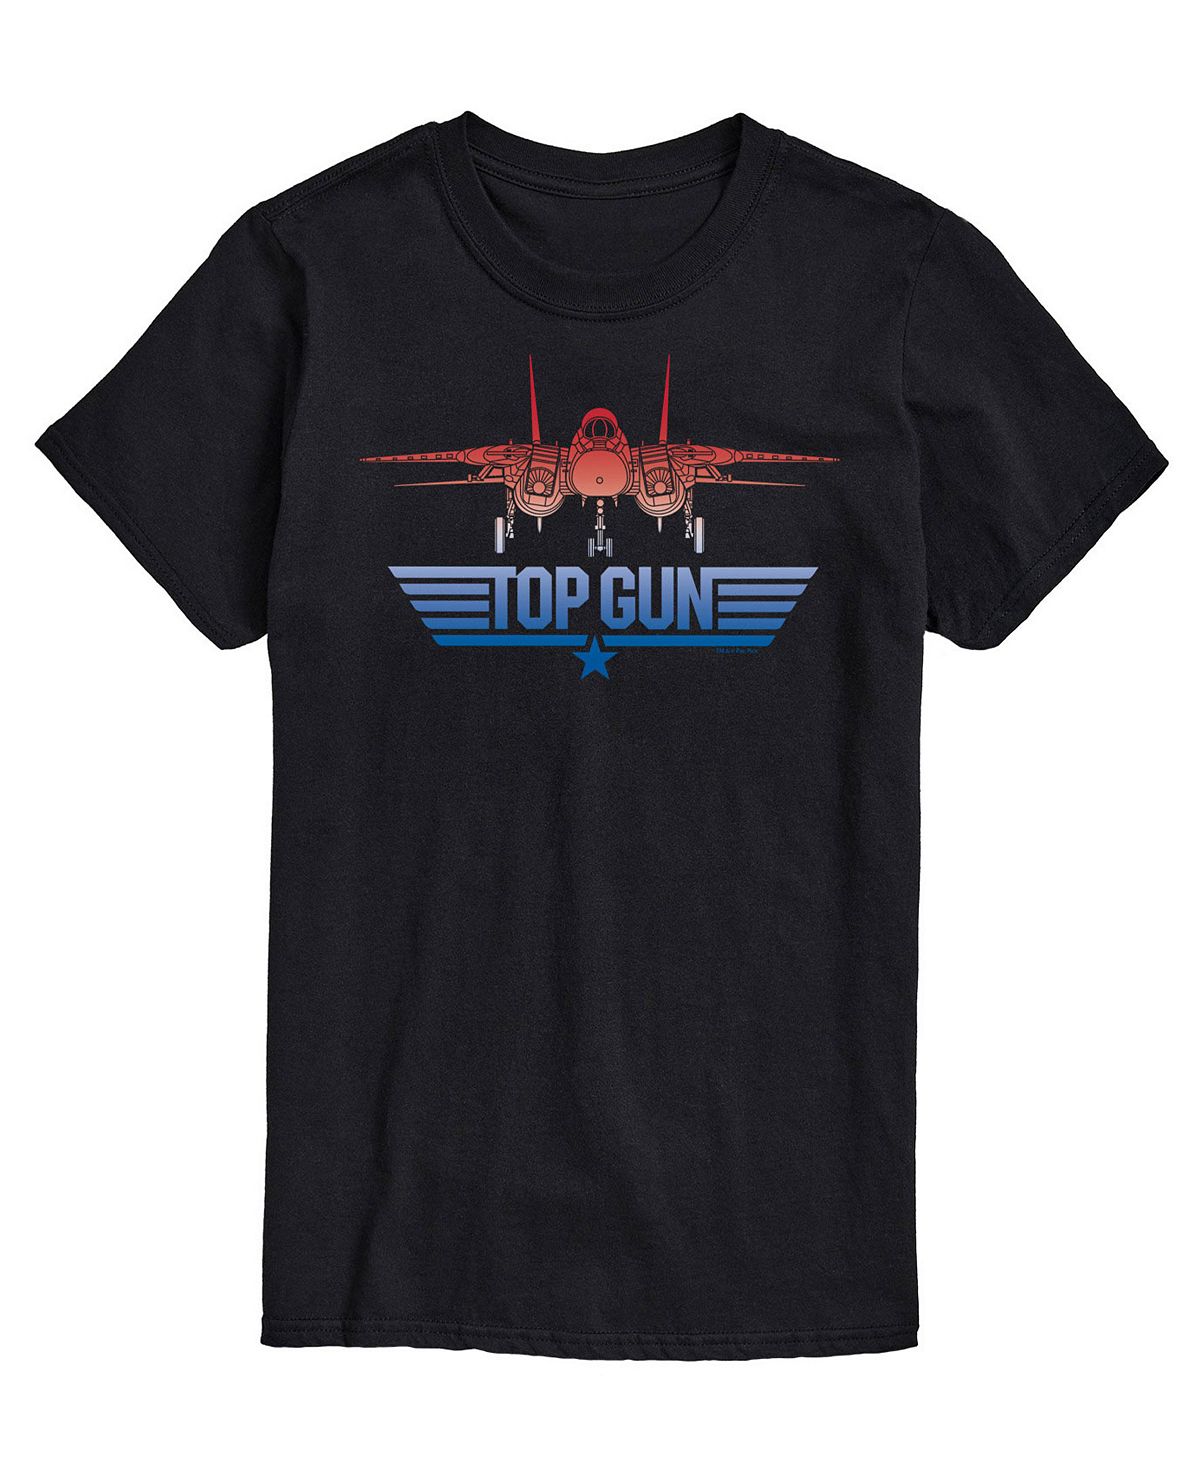 цена Мужская футболка top gun logo с принтом самолета AIRWAVES, черный